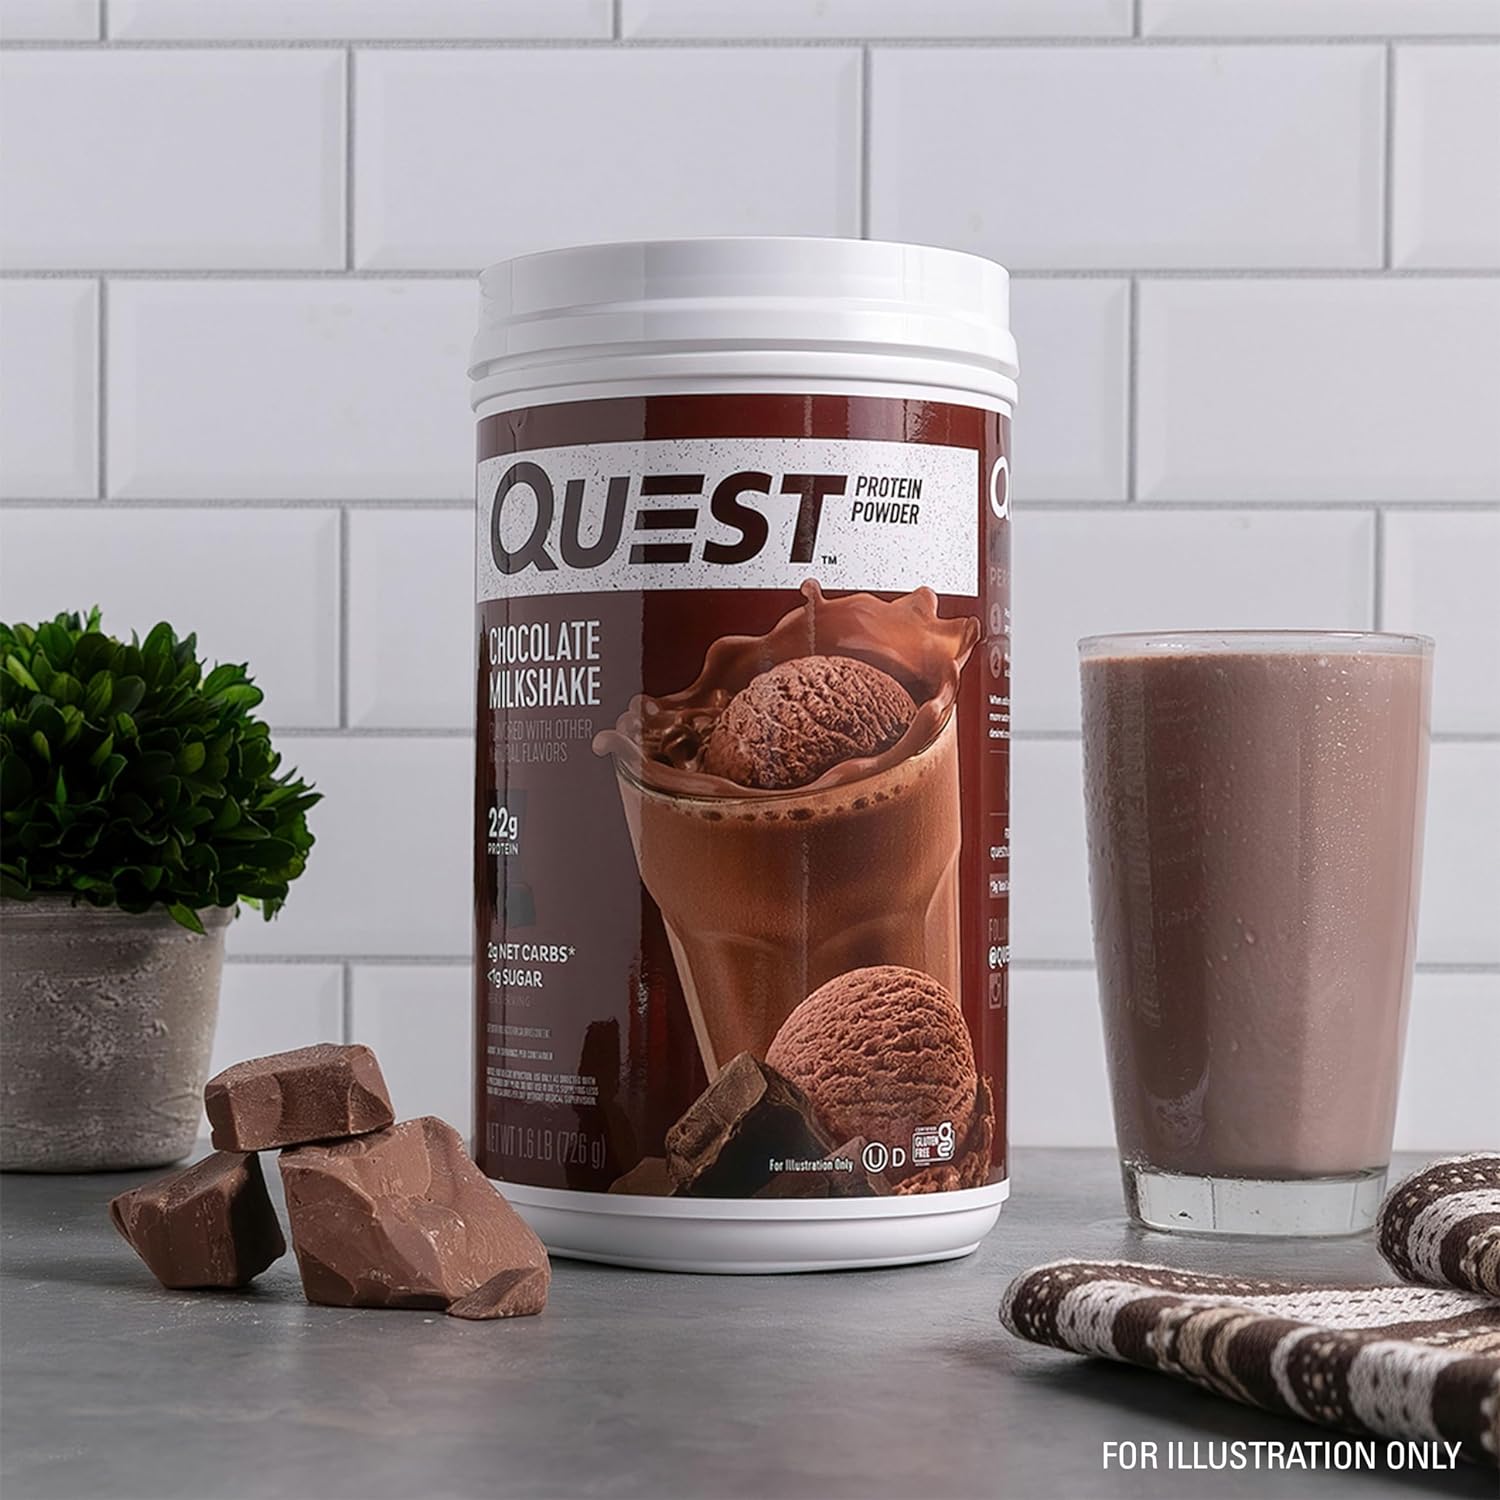 Quest Nutrition Chocolate Milkshake Protein Powder, 22g Protein, 2g Ne